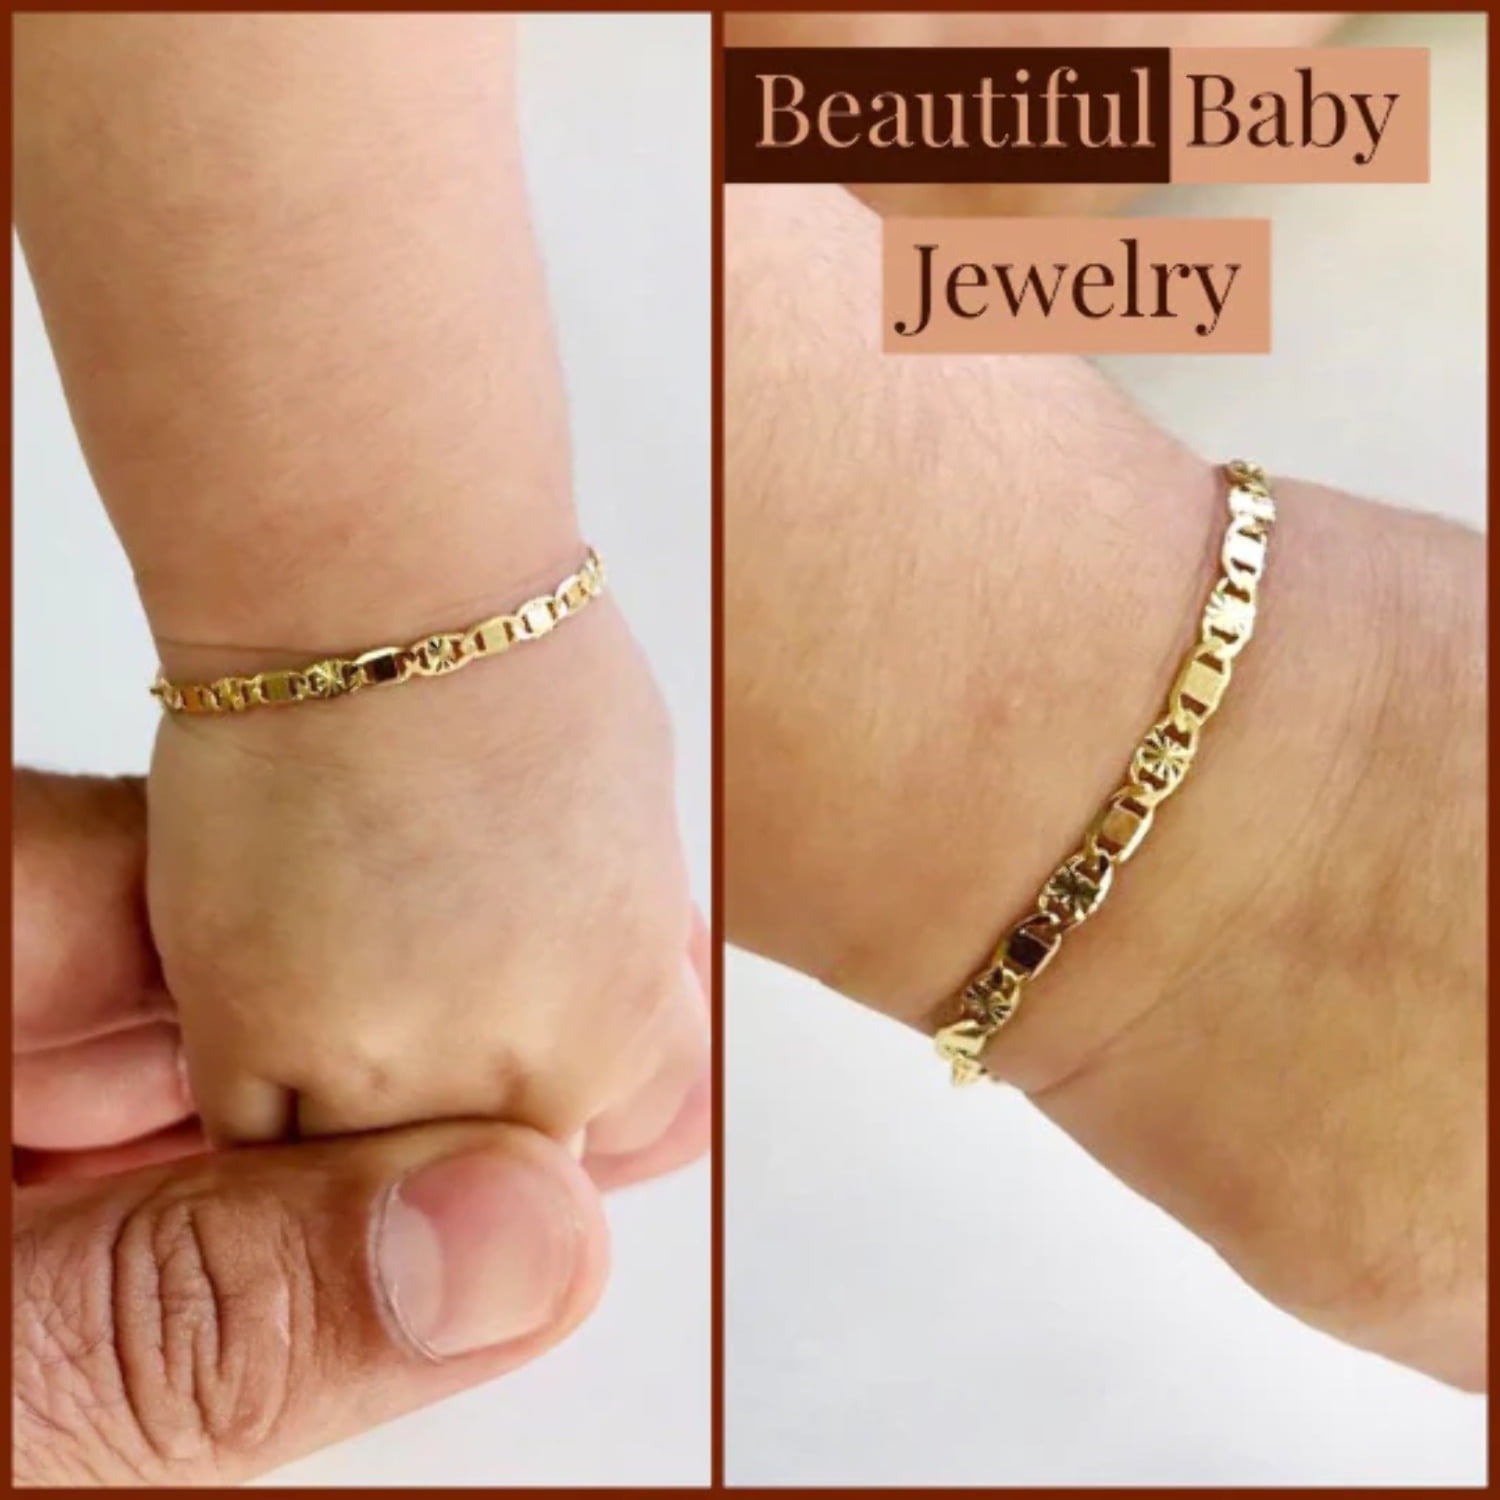 Swarovski Crystal Childrens Bracelet | Unique Gifts for Little Girls